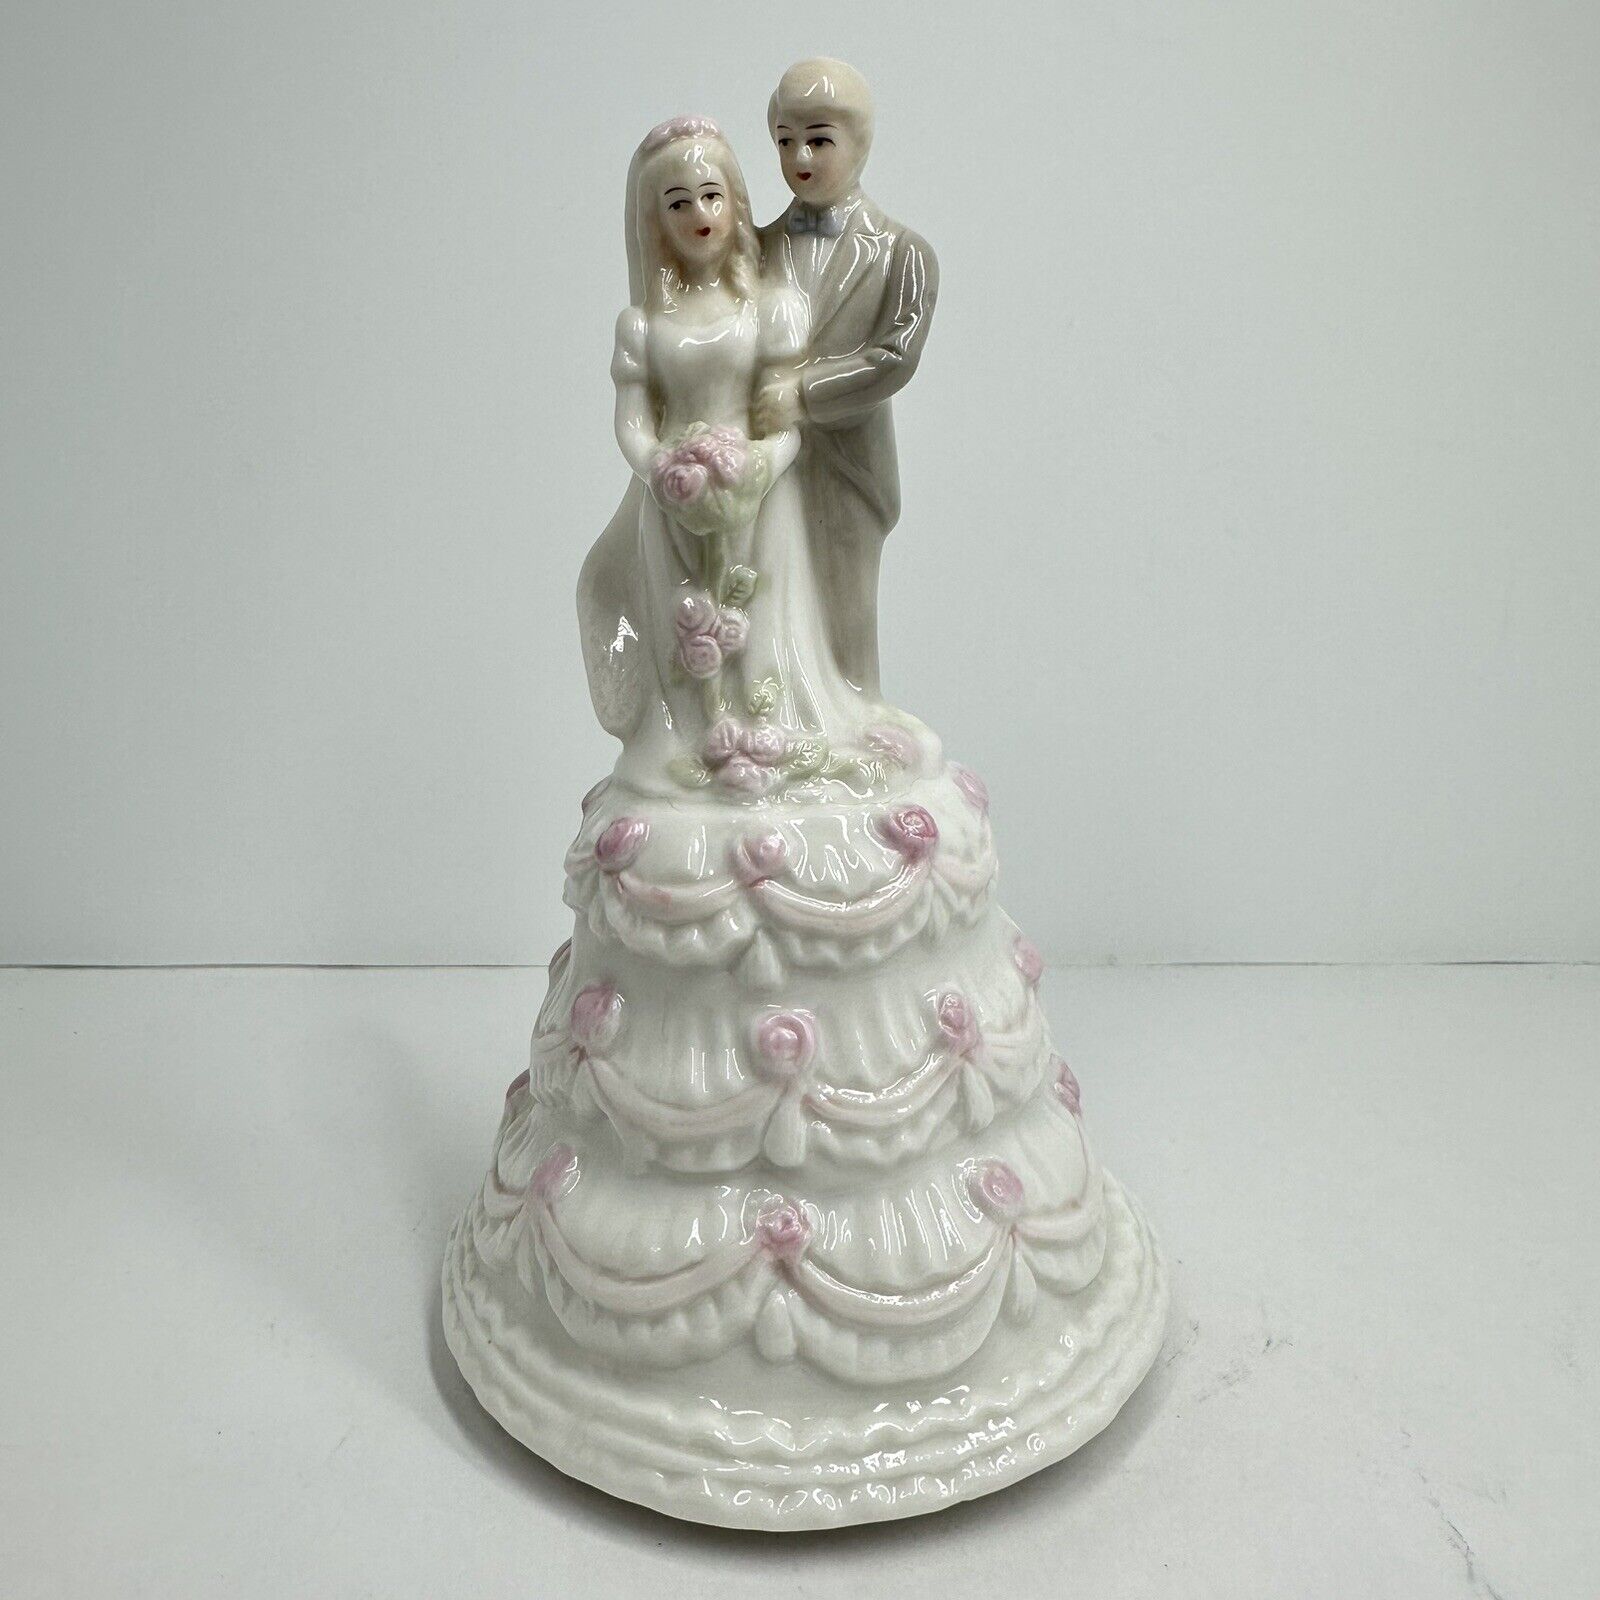 Vintage Bride and Groom Porcelain 7” Figurine Music Box Wedding Porcelain